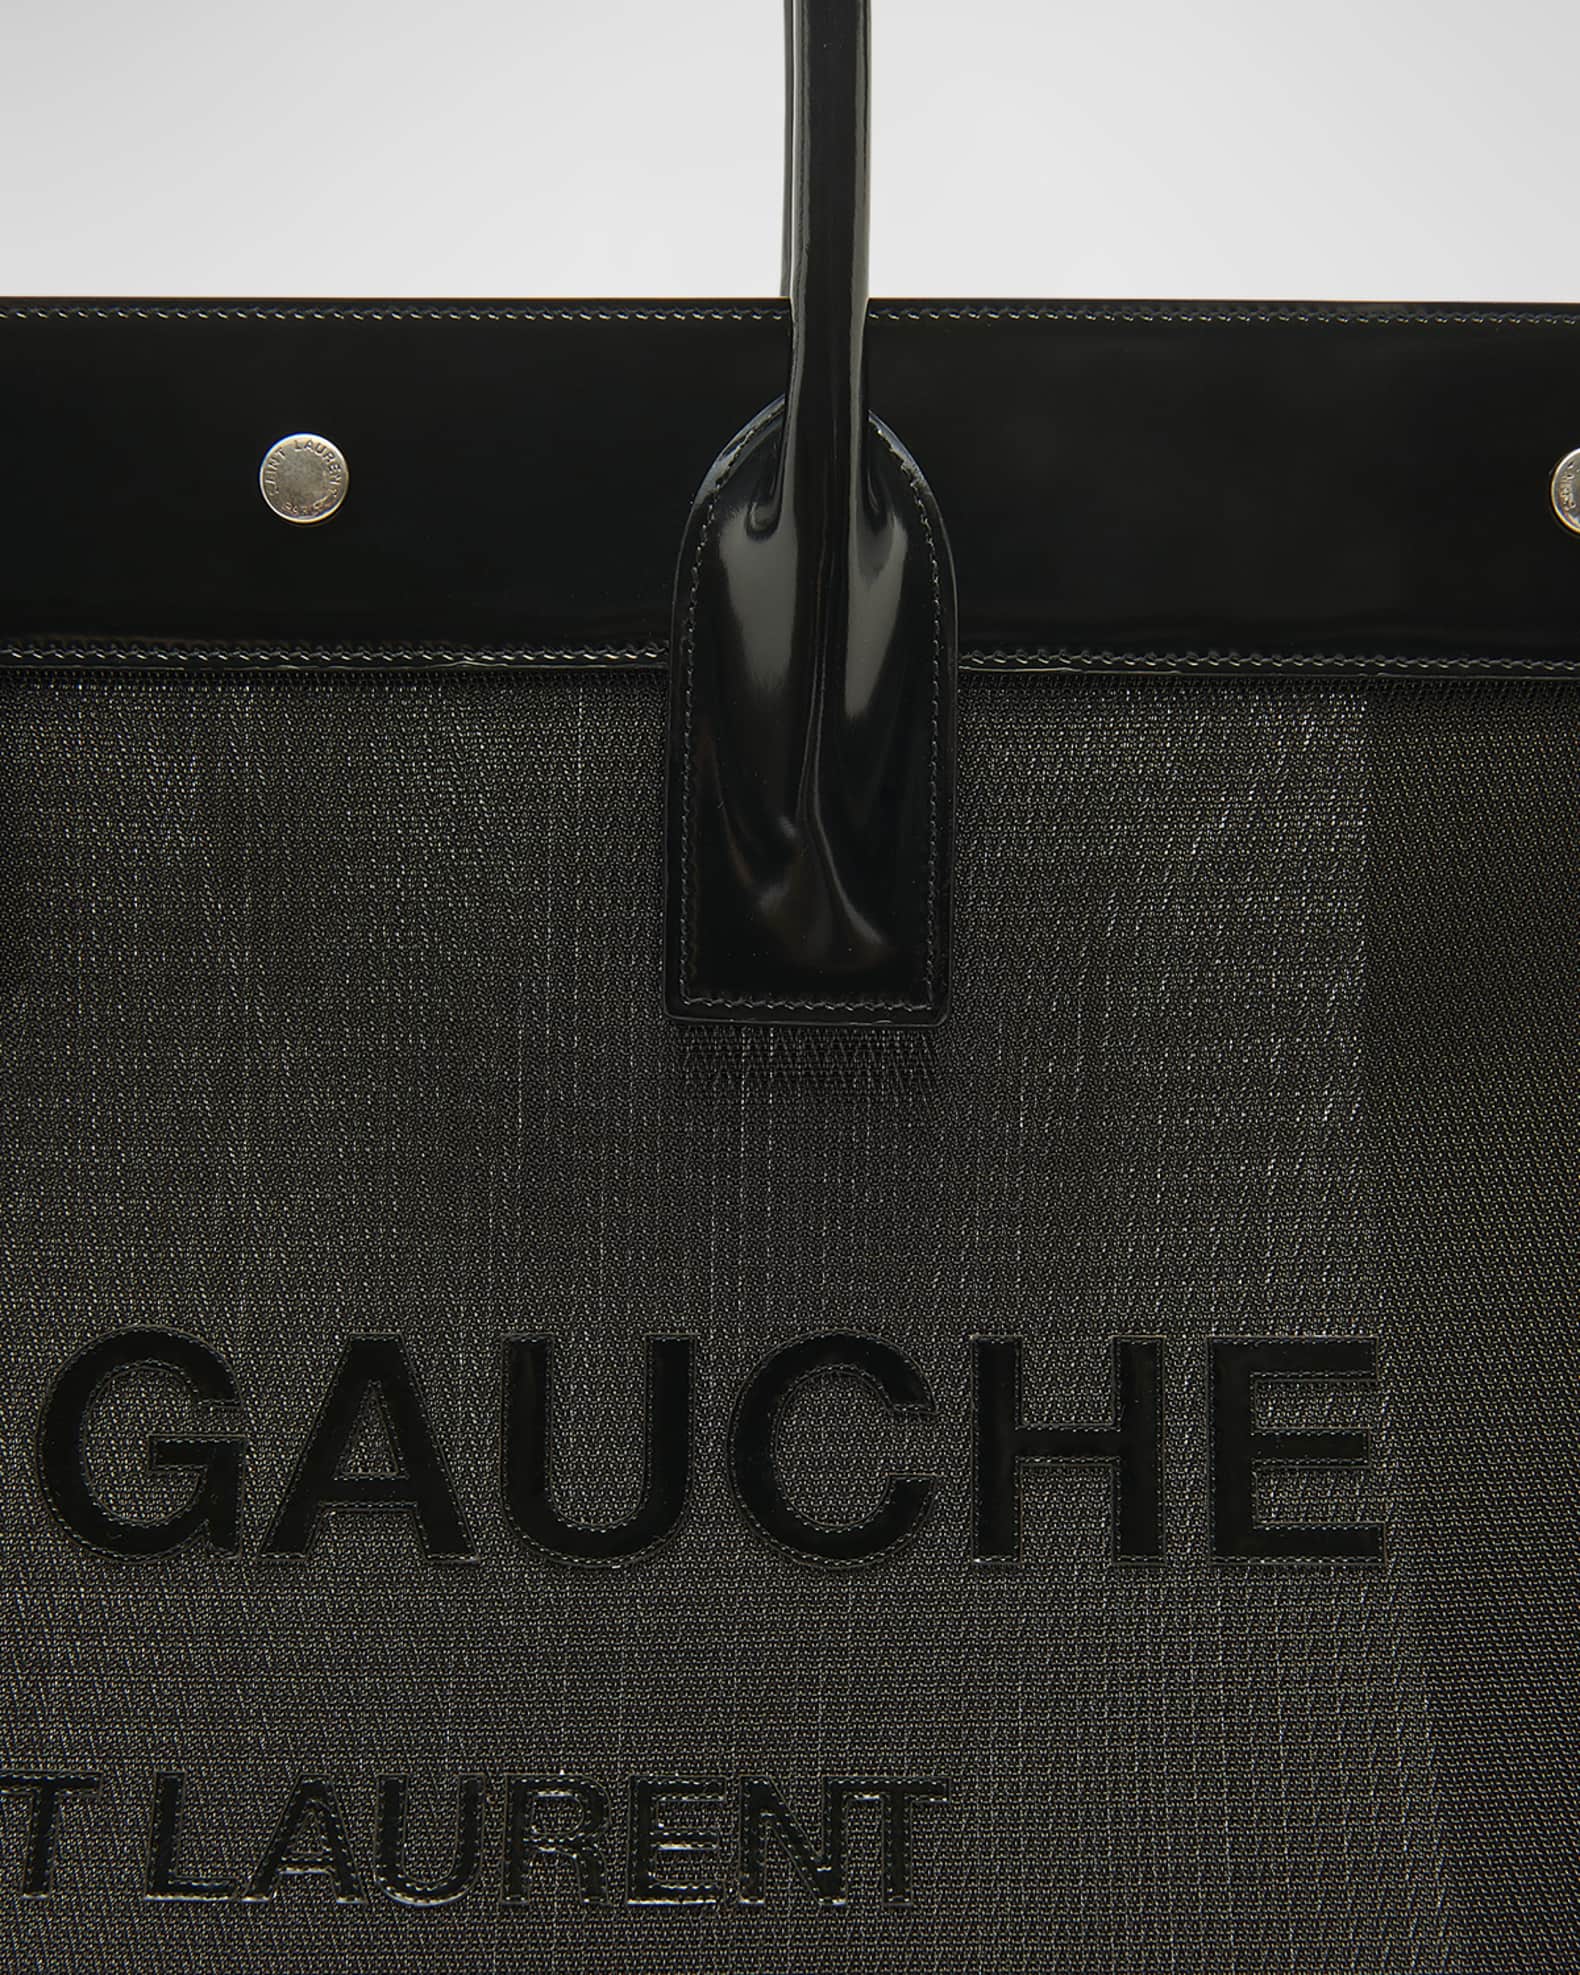 Saint Laurent Rive Gauche Leather Tote Unboxing 